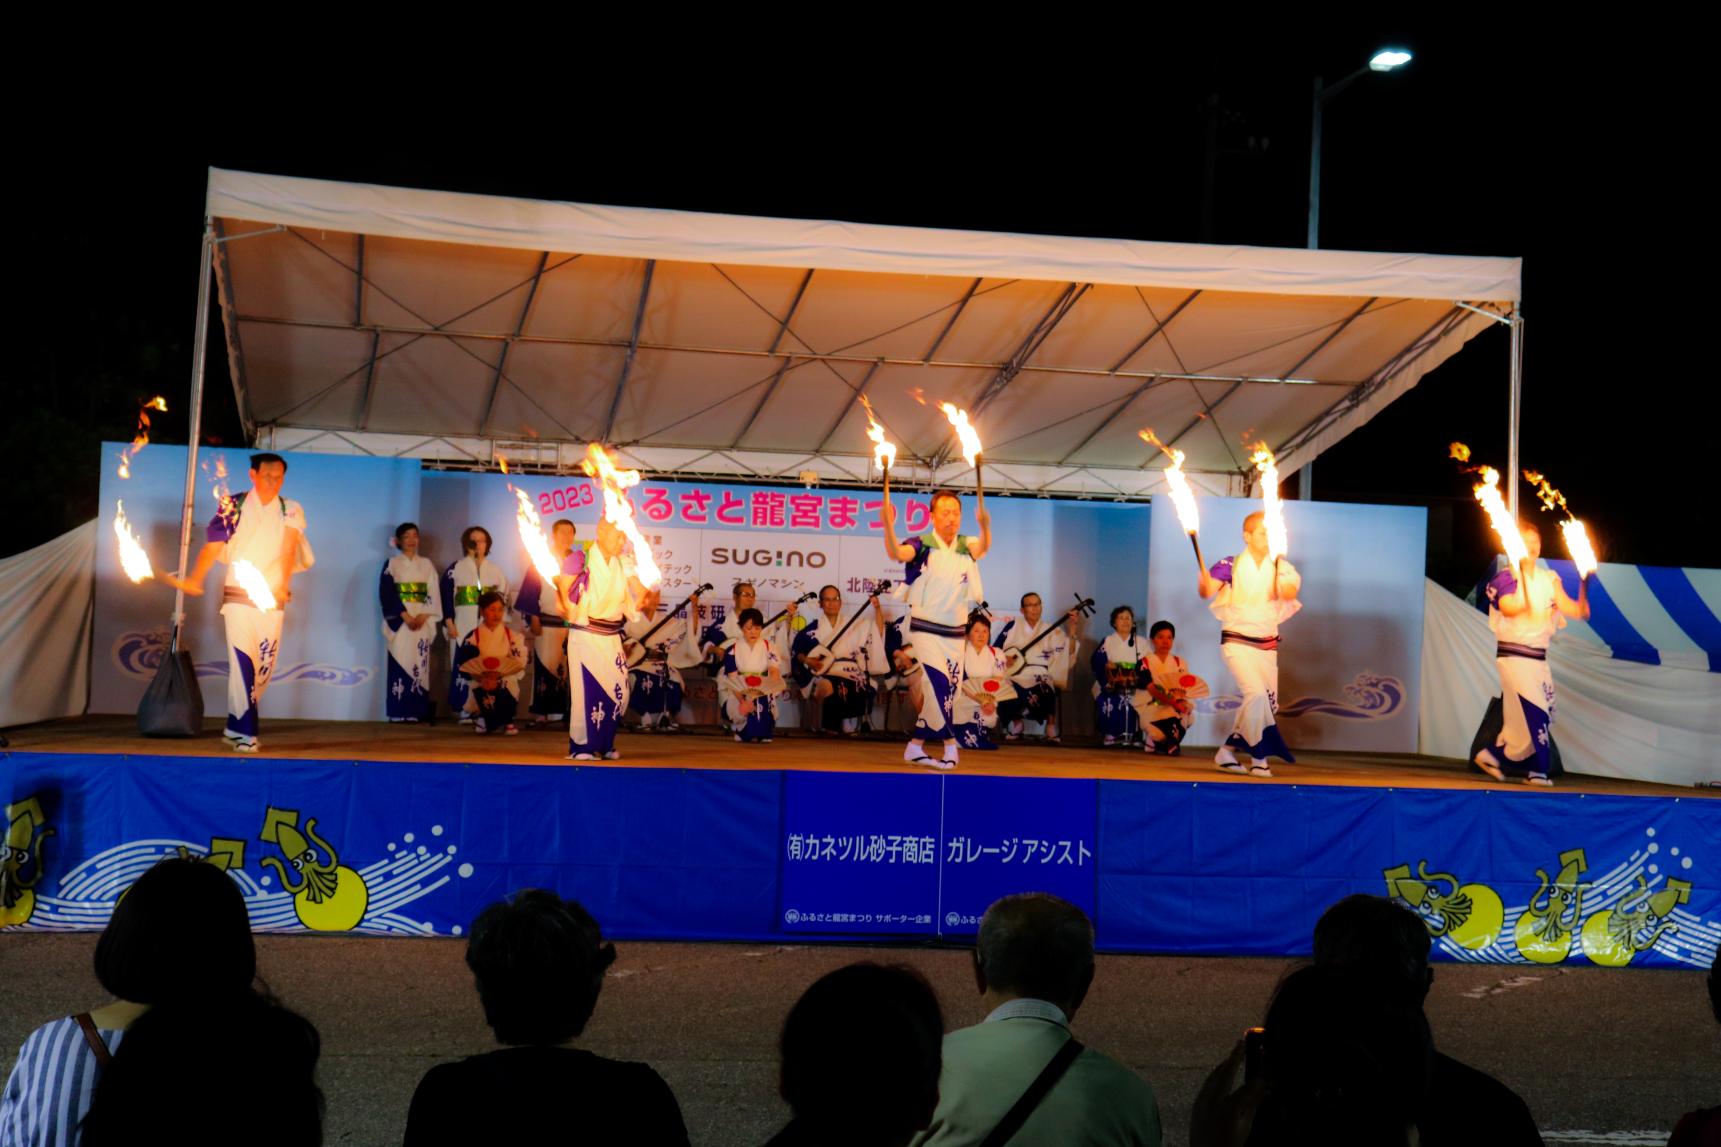 燃え盛る松明と共に踊る伝統芸能「新川古代神」